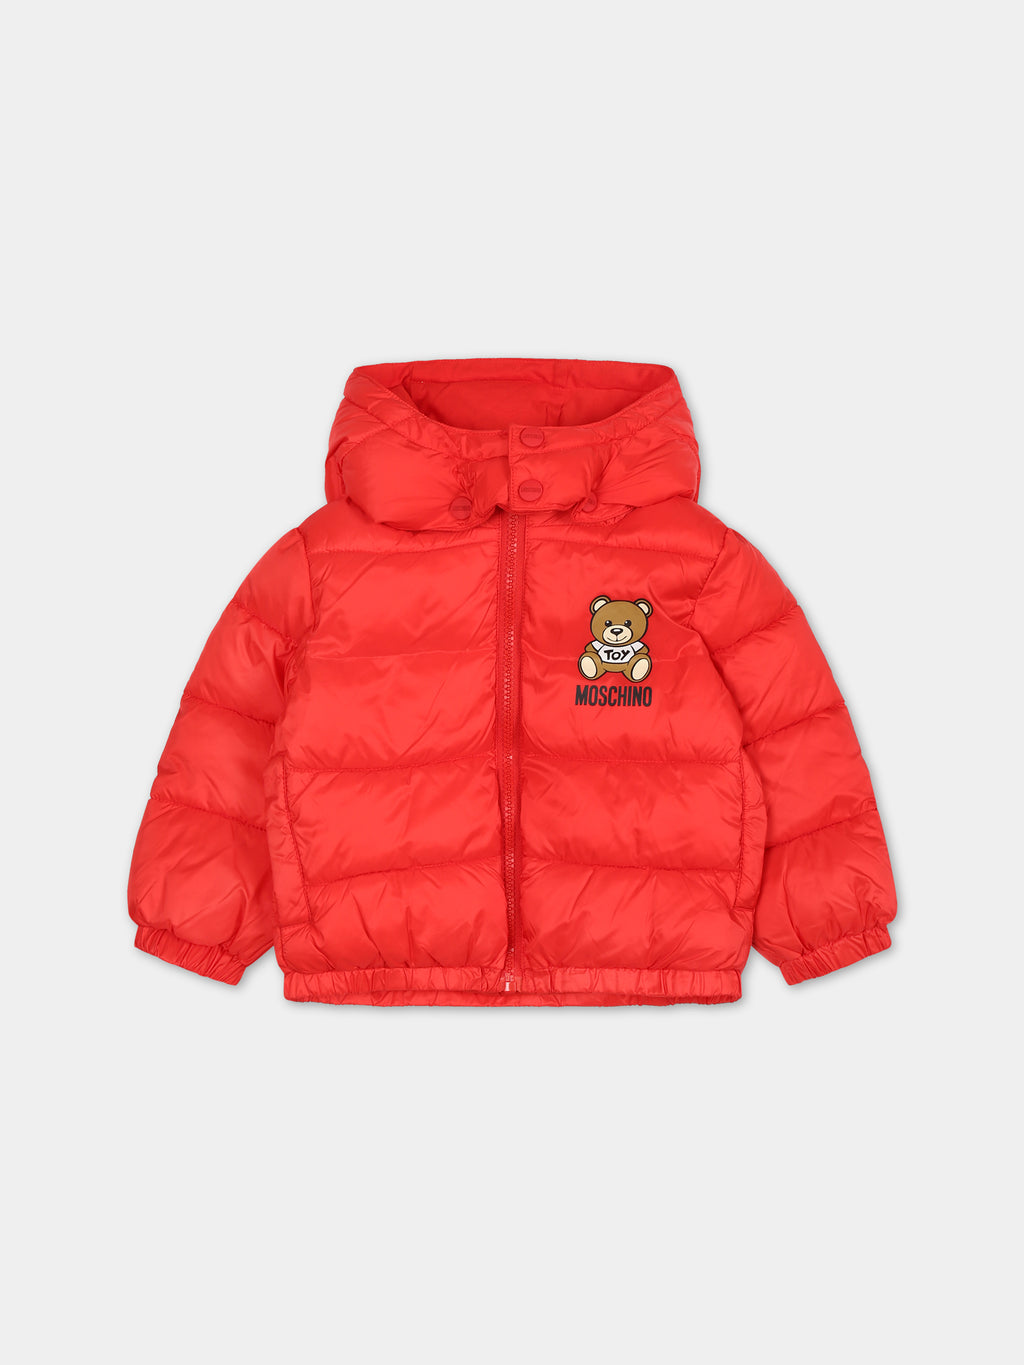 Doudoune rouge pour bébé enfants avec Teddy Bear et logo